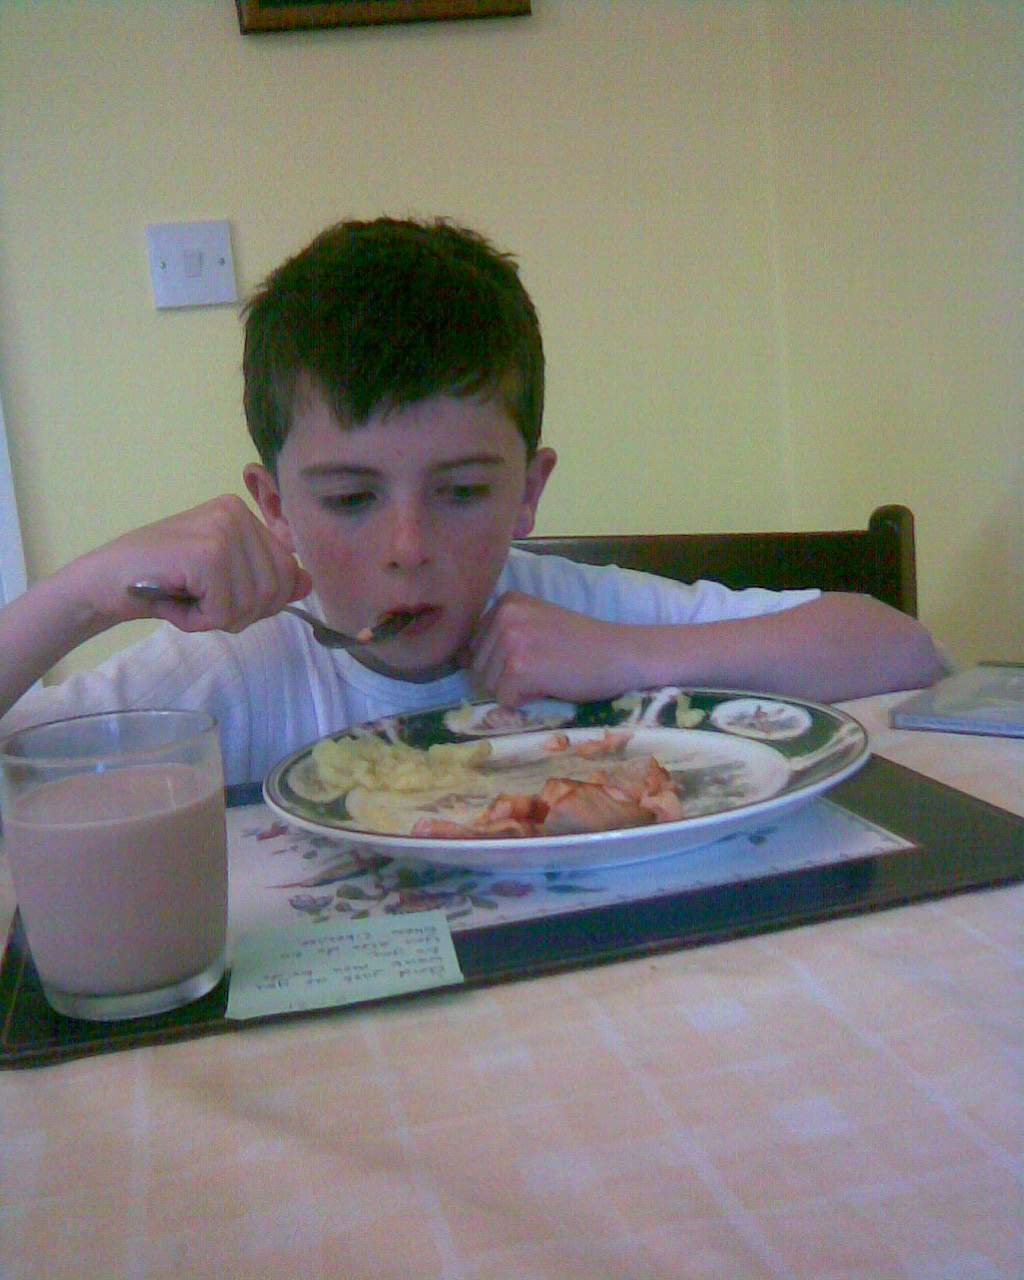 [Sean+eating.jpg]